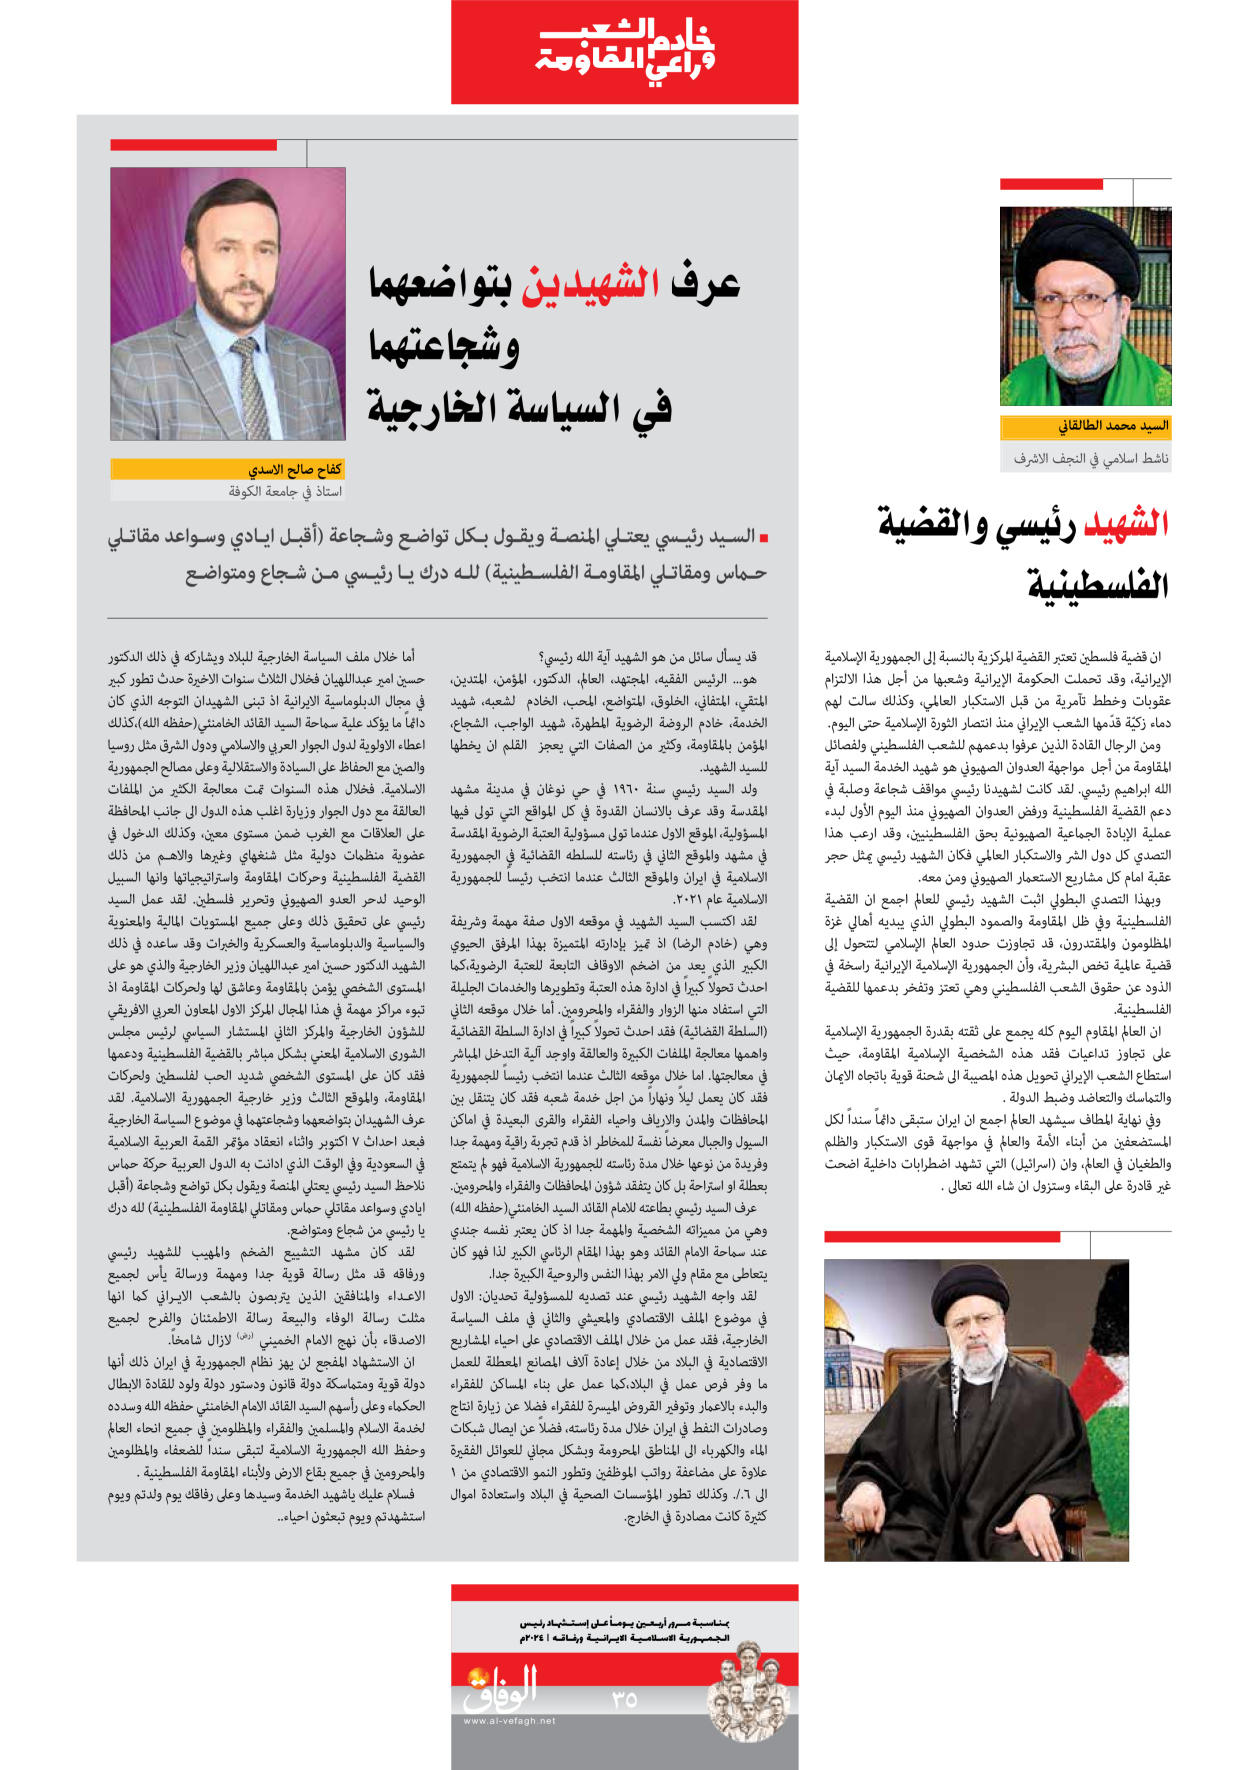 صحیفة ایران الدولیة الوفاق - ملحق ویژه نامه چهلم شهید رییسی - ٢٩ يونيو ٢٠٢٤ - الصفحة ۳٥